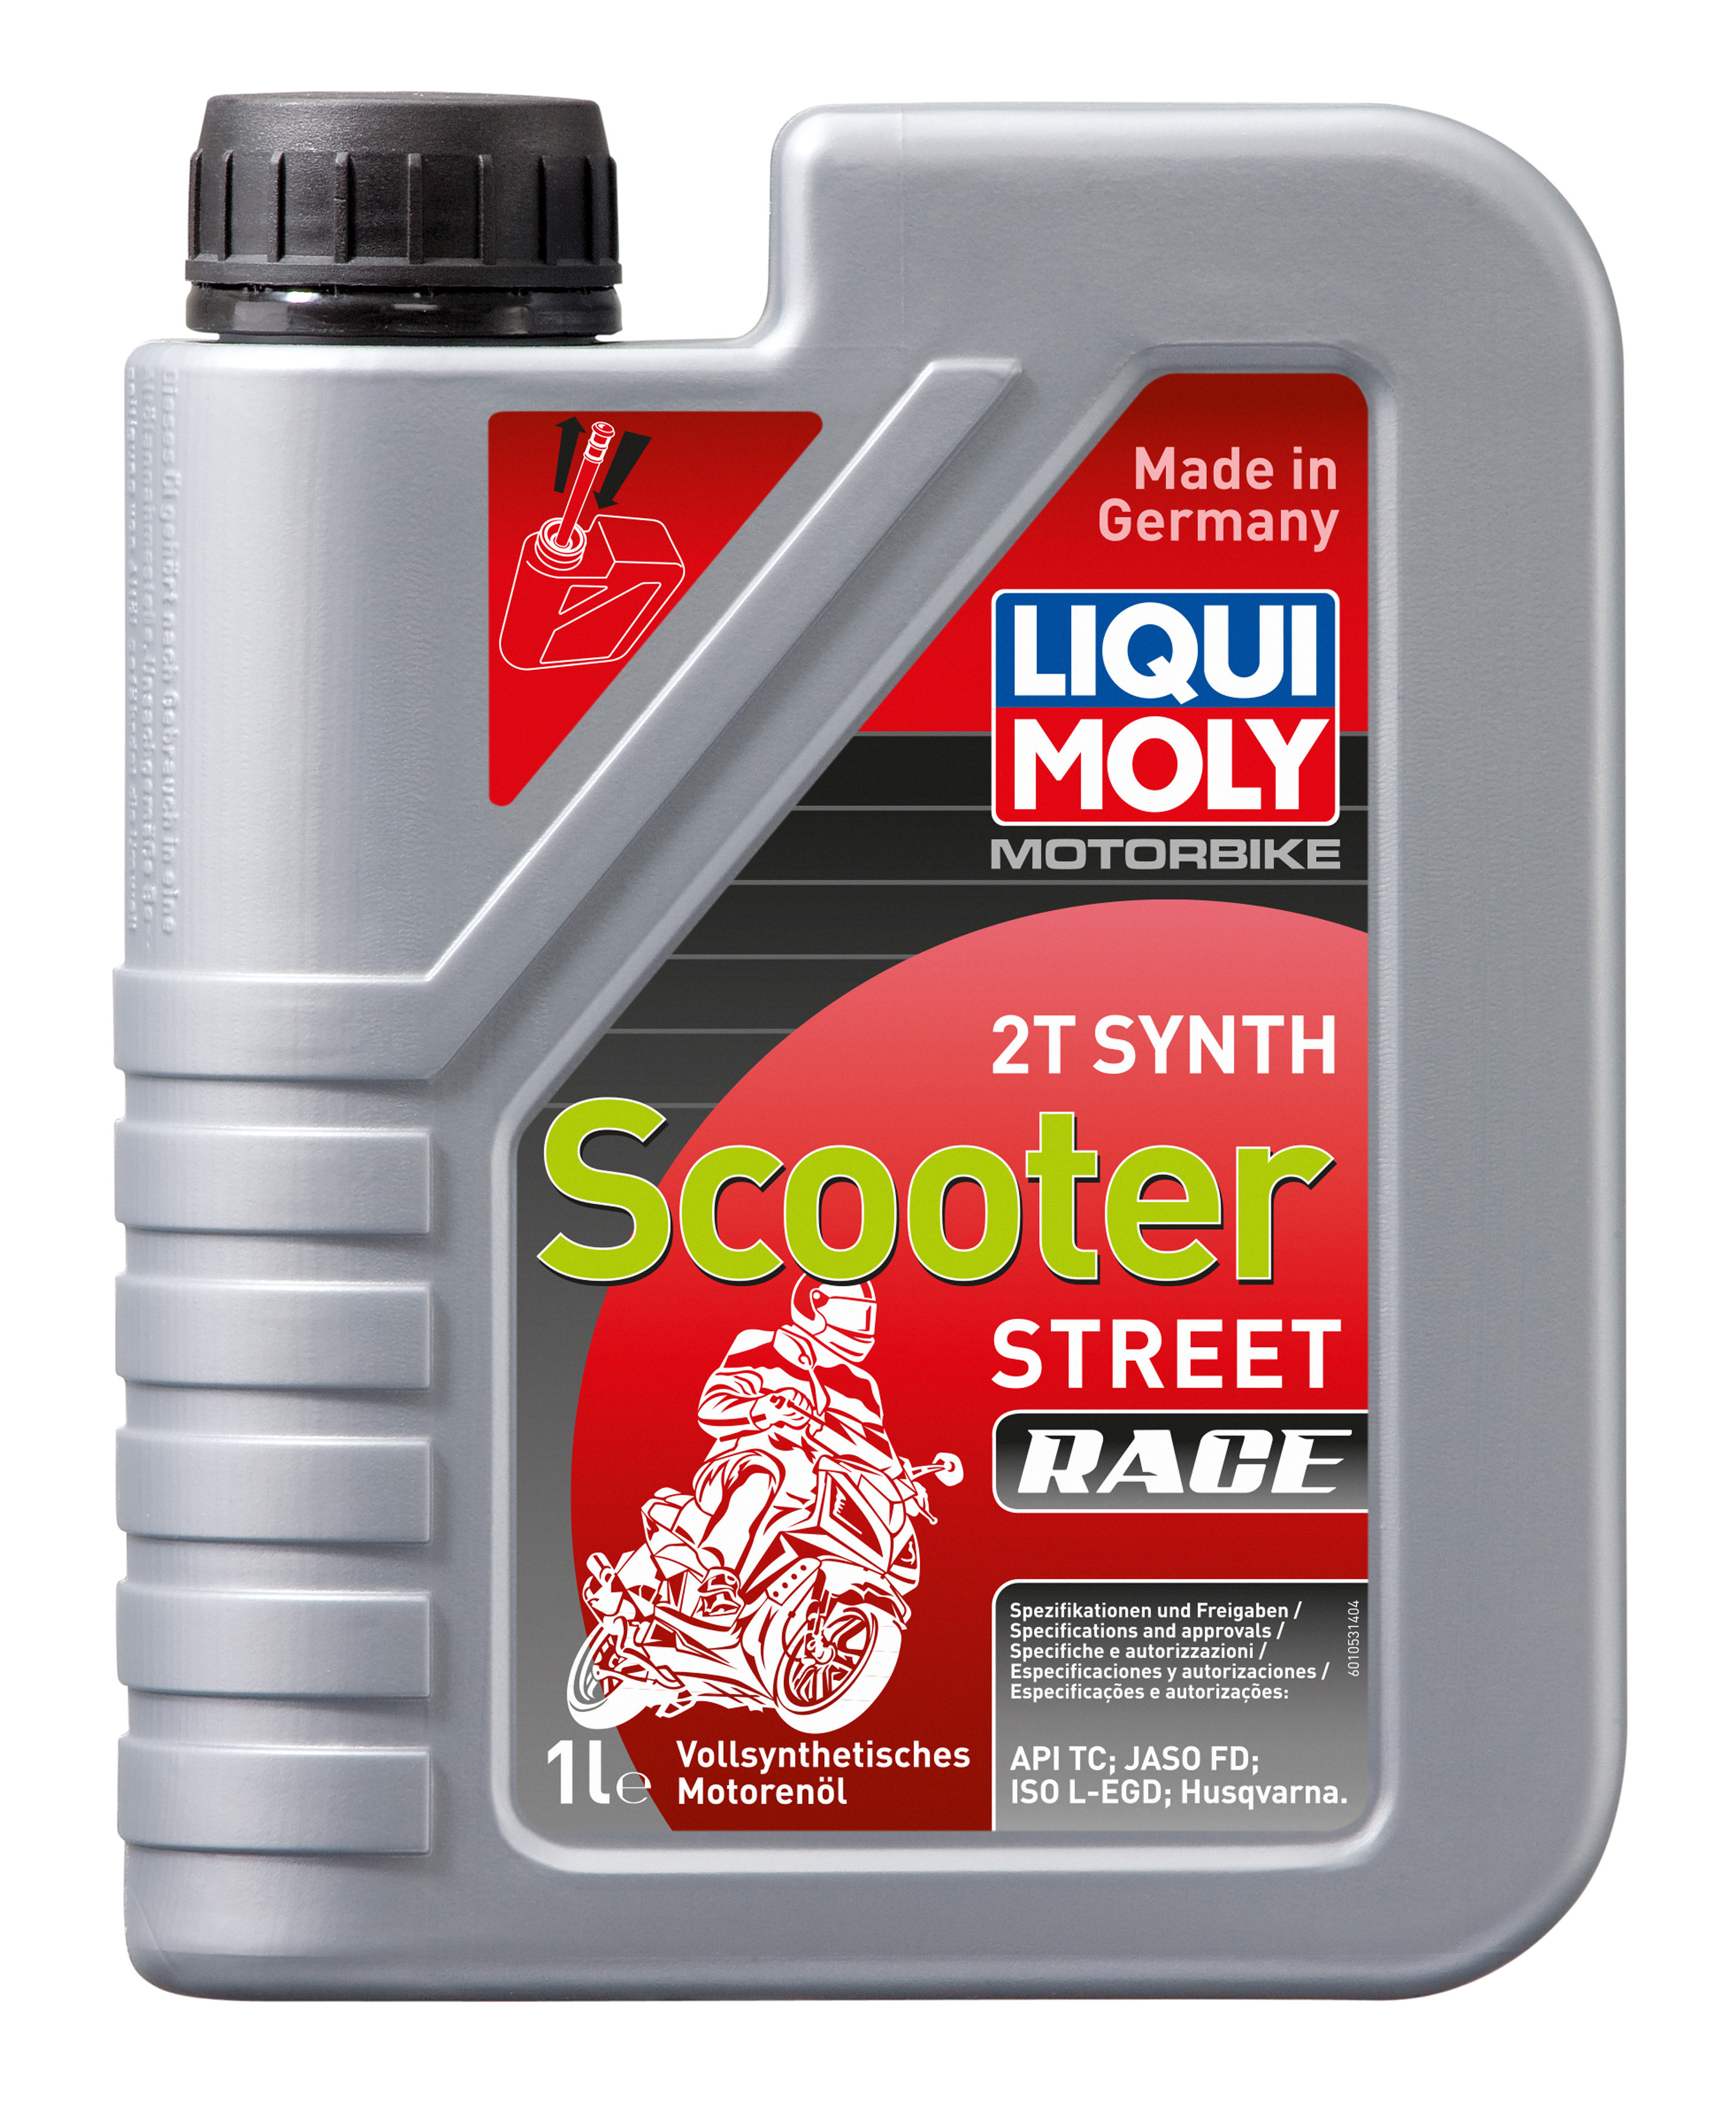 Синтетическое моторное масло для скутеров Liqui Moly Motorbike 2T Synth Scooter Street Race 1л